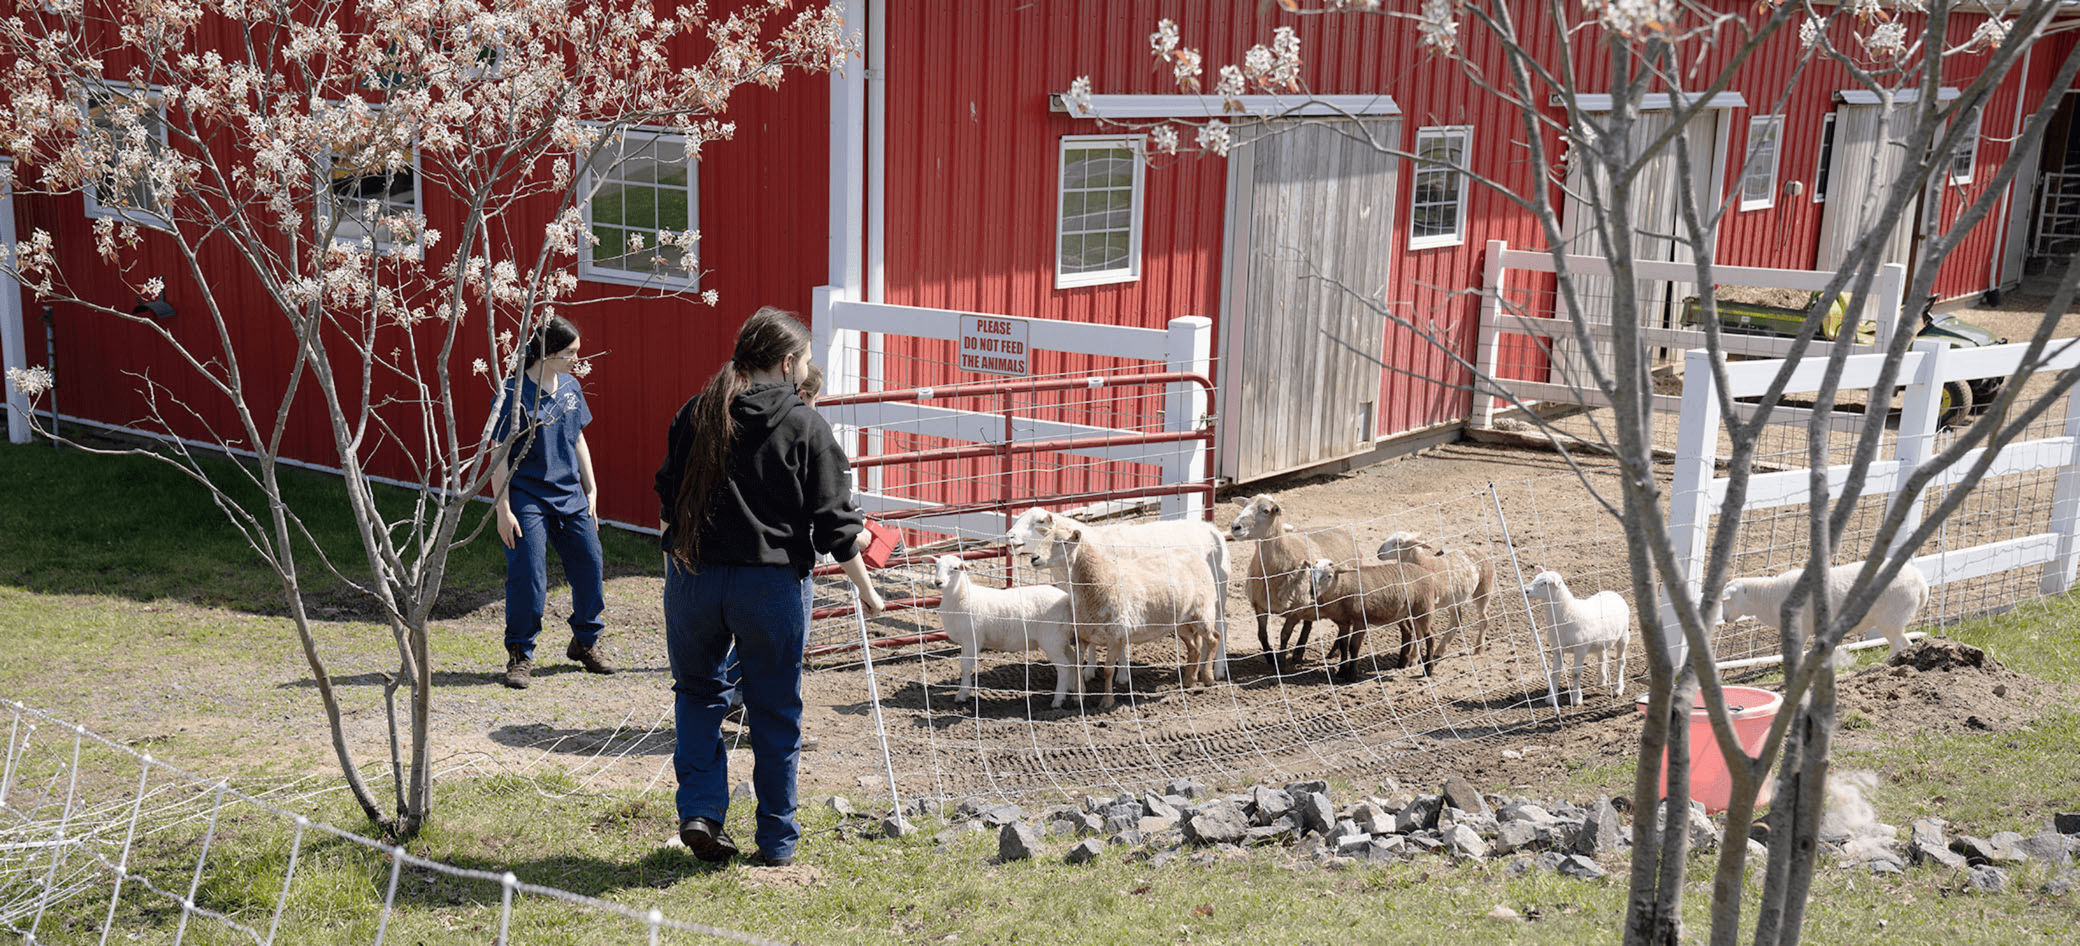 Tre studenti liberano un gruppo di pecore eccitate da un recinto.